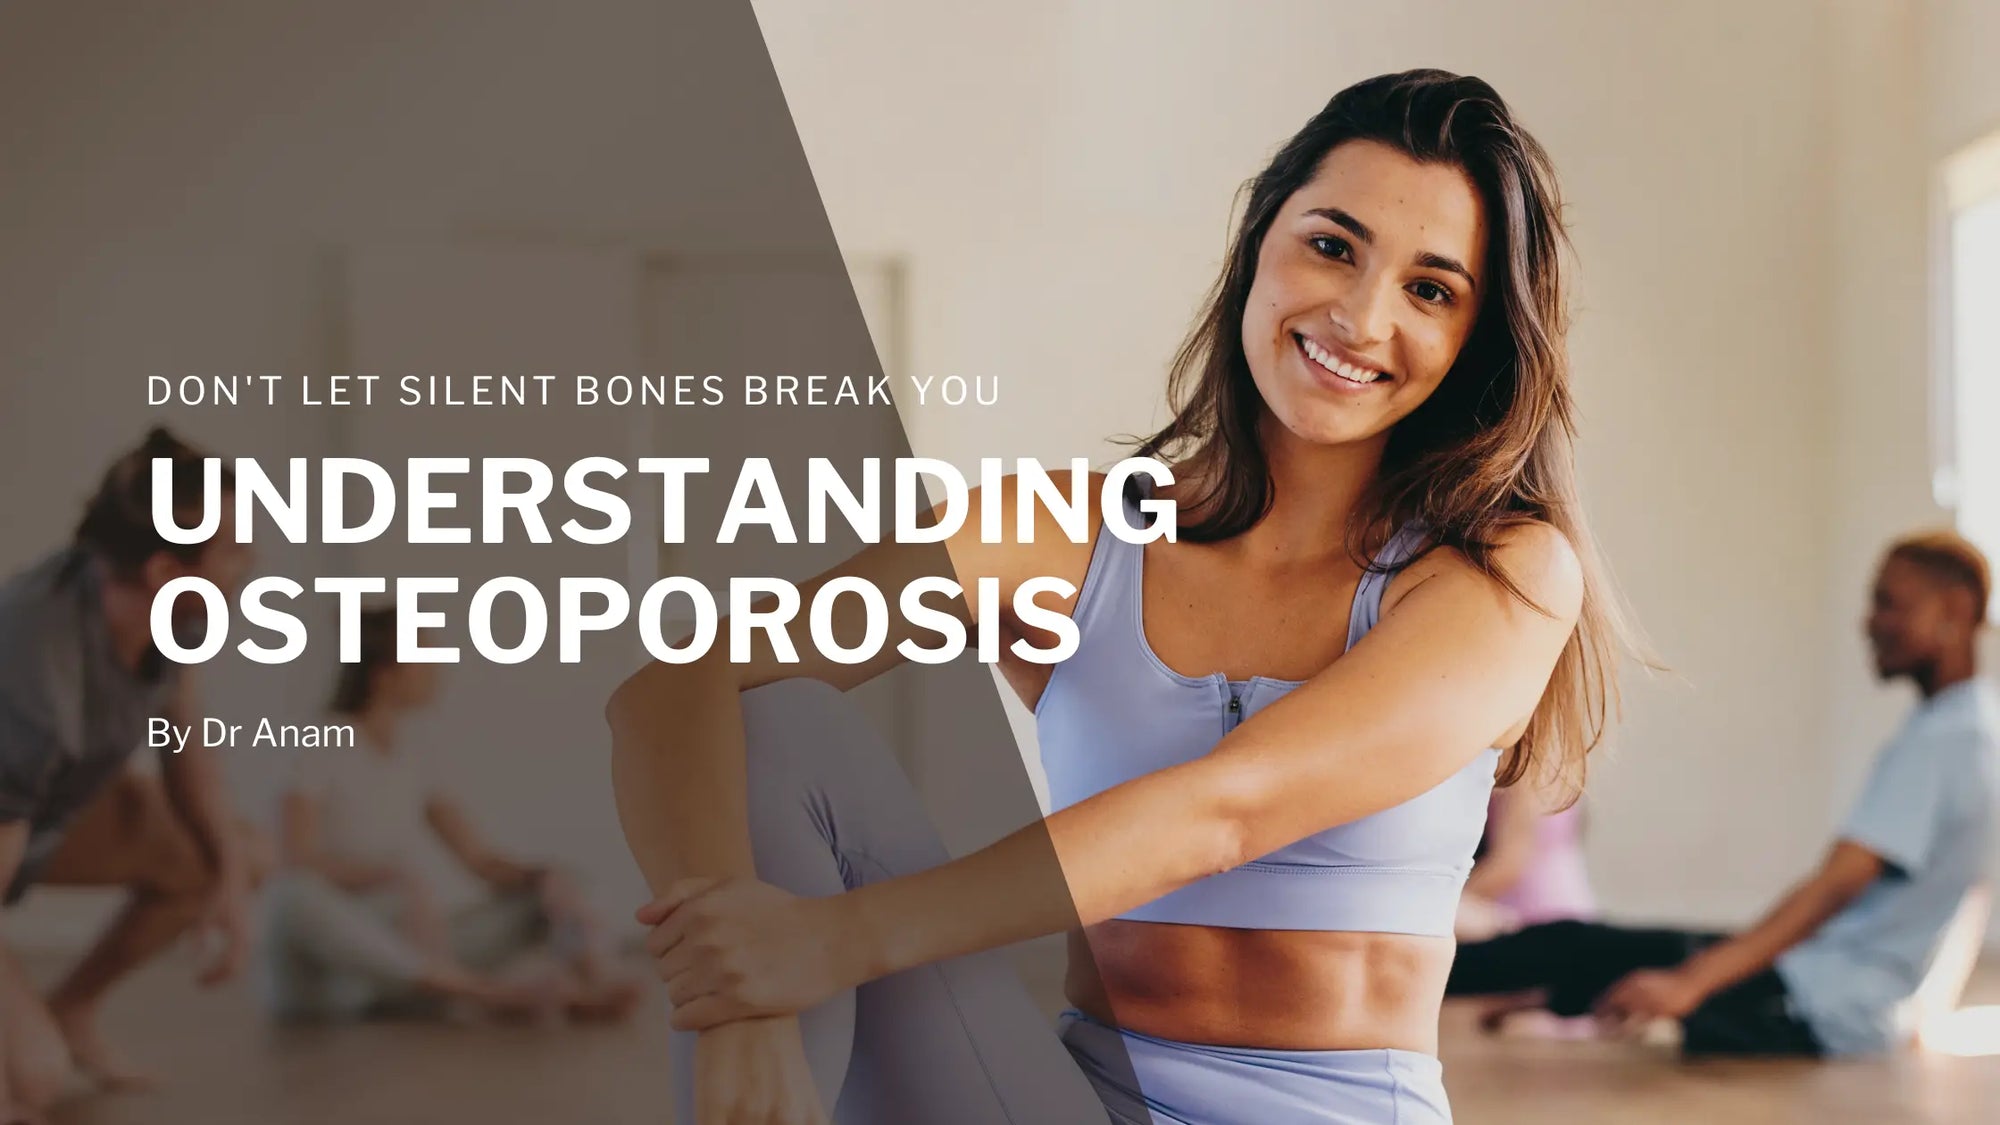 Don't Let Silent Bones Break You: Understanding Osteoporosis